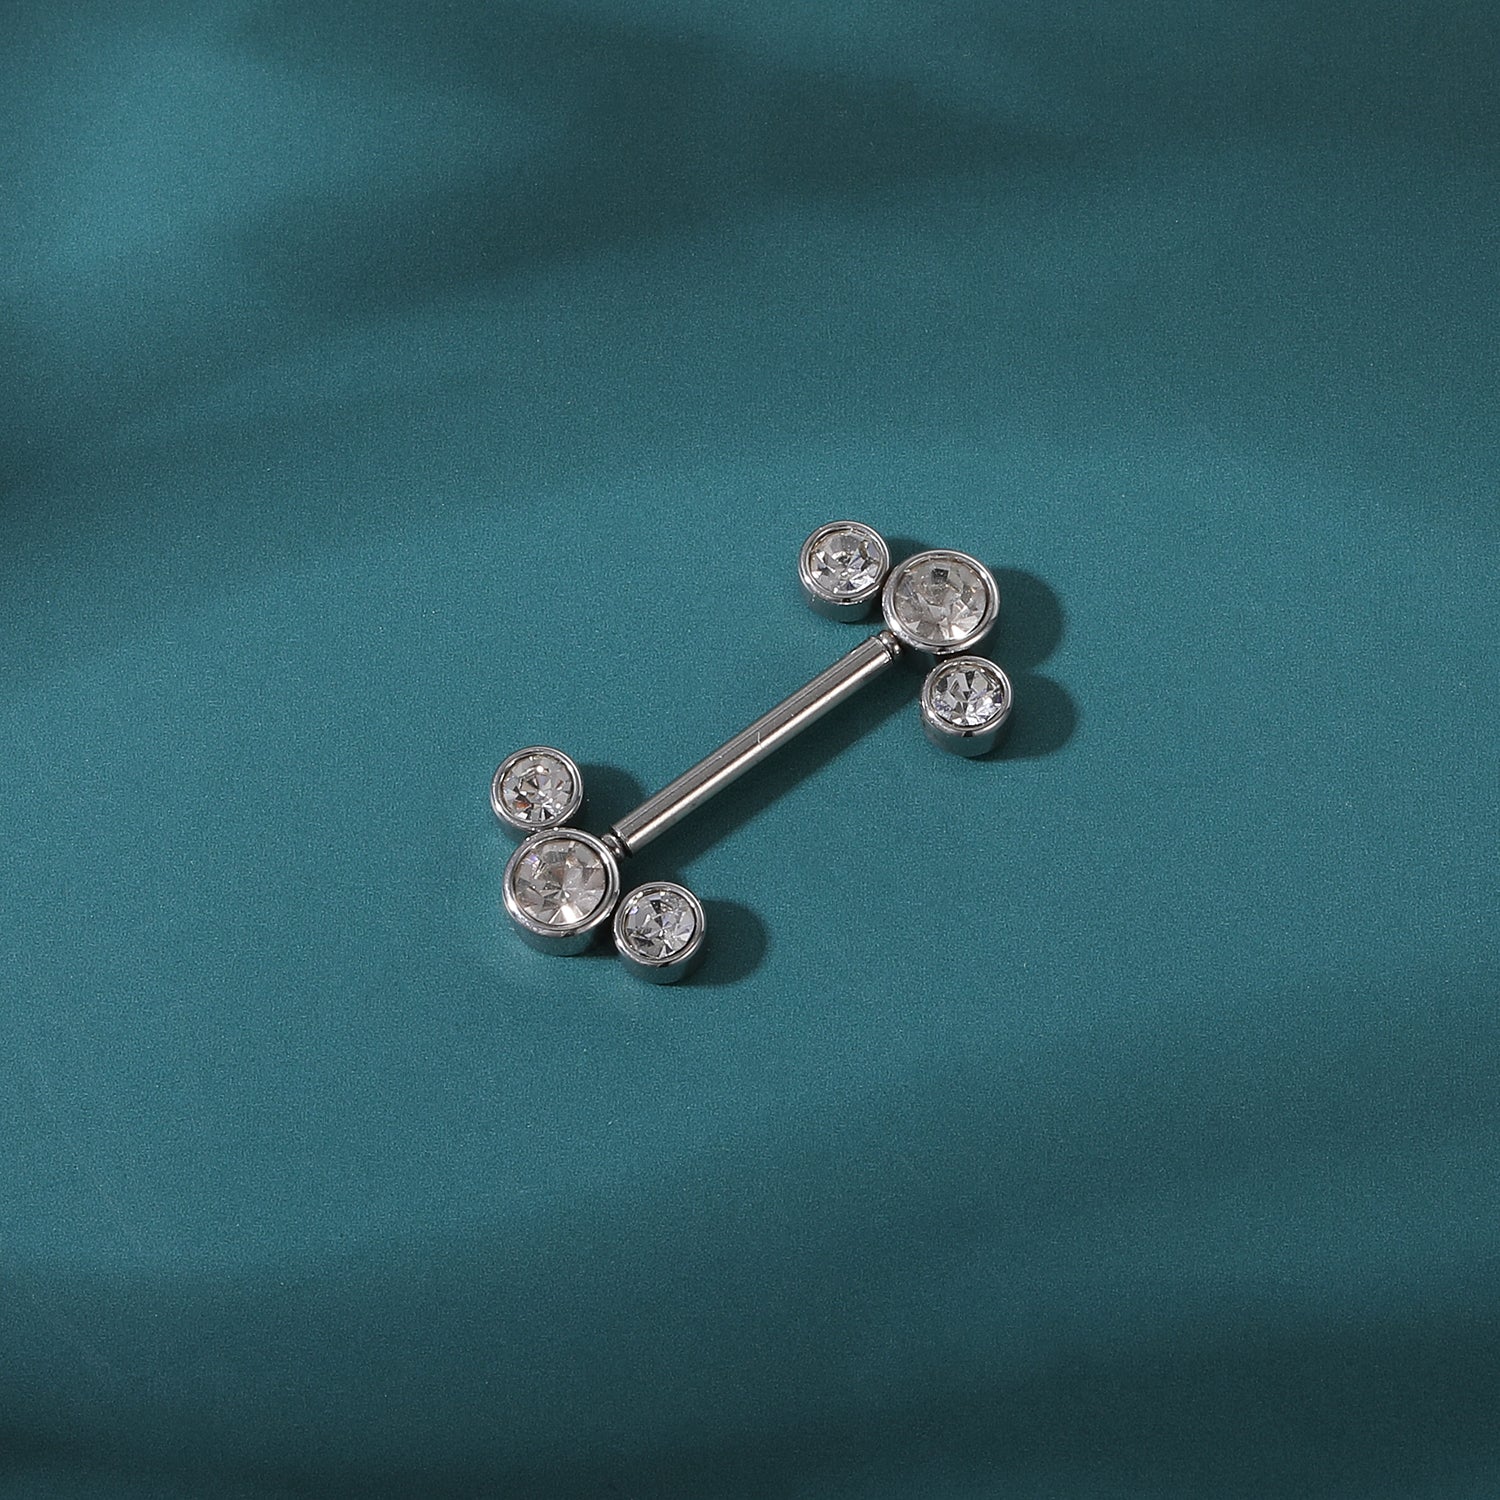 2pcs 14G Plug-in Nipple Ring White Crystal Nipple Piercings